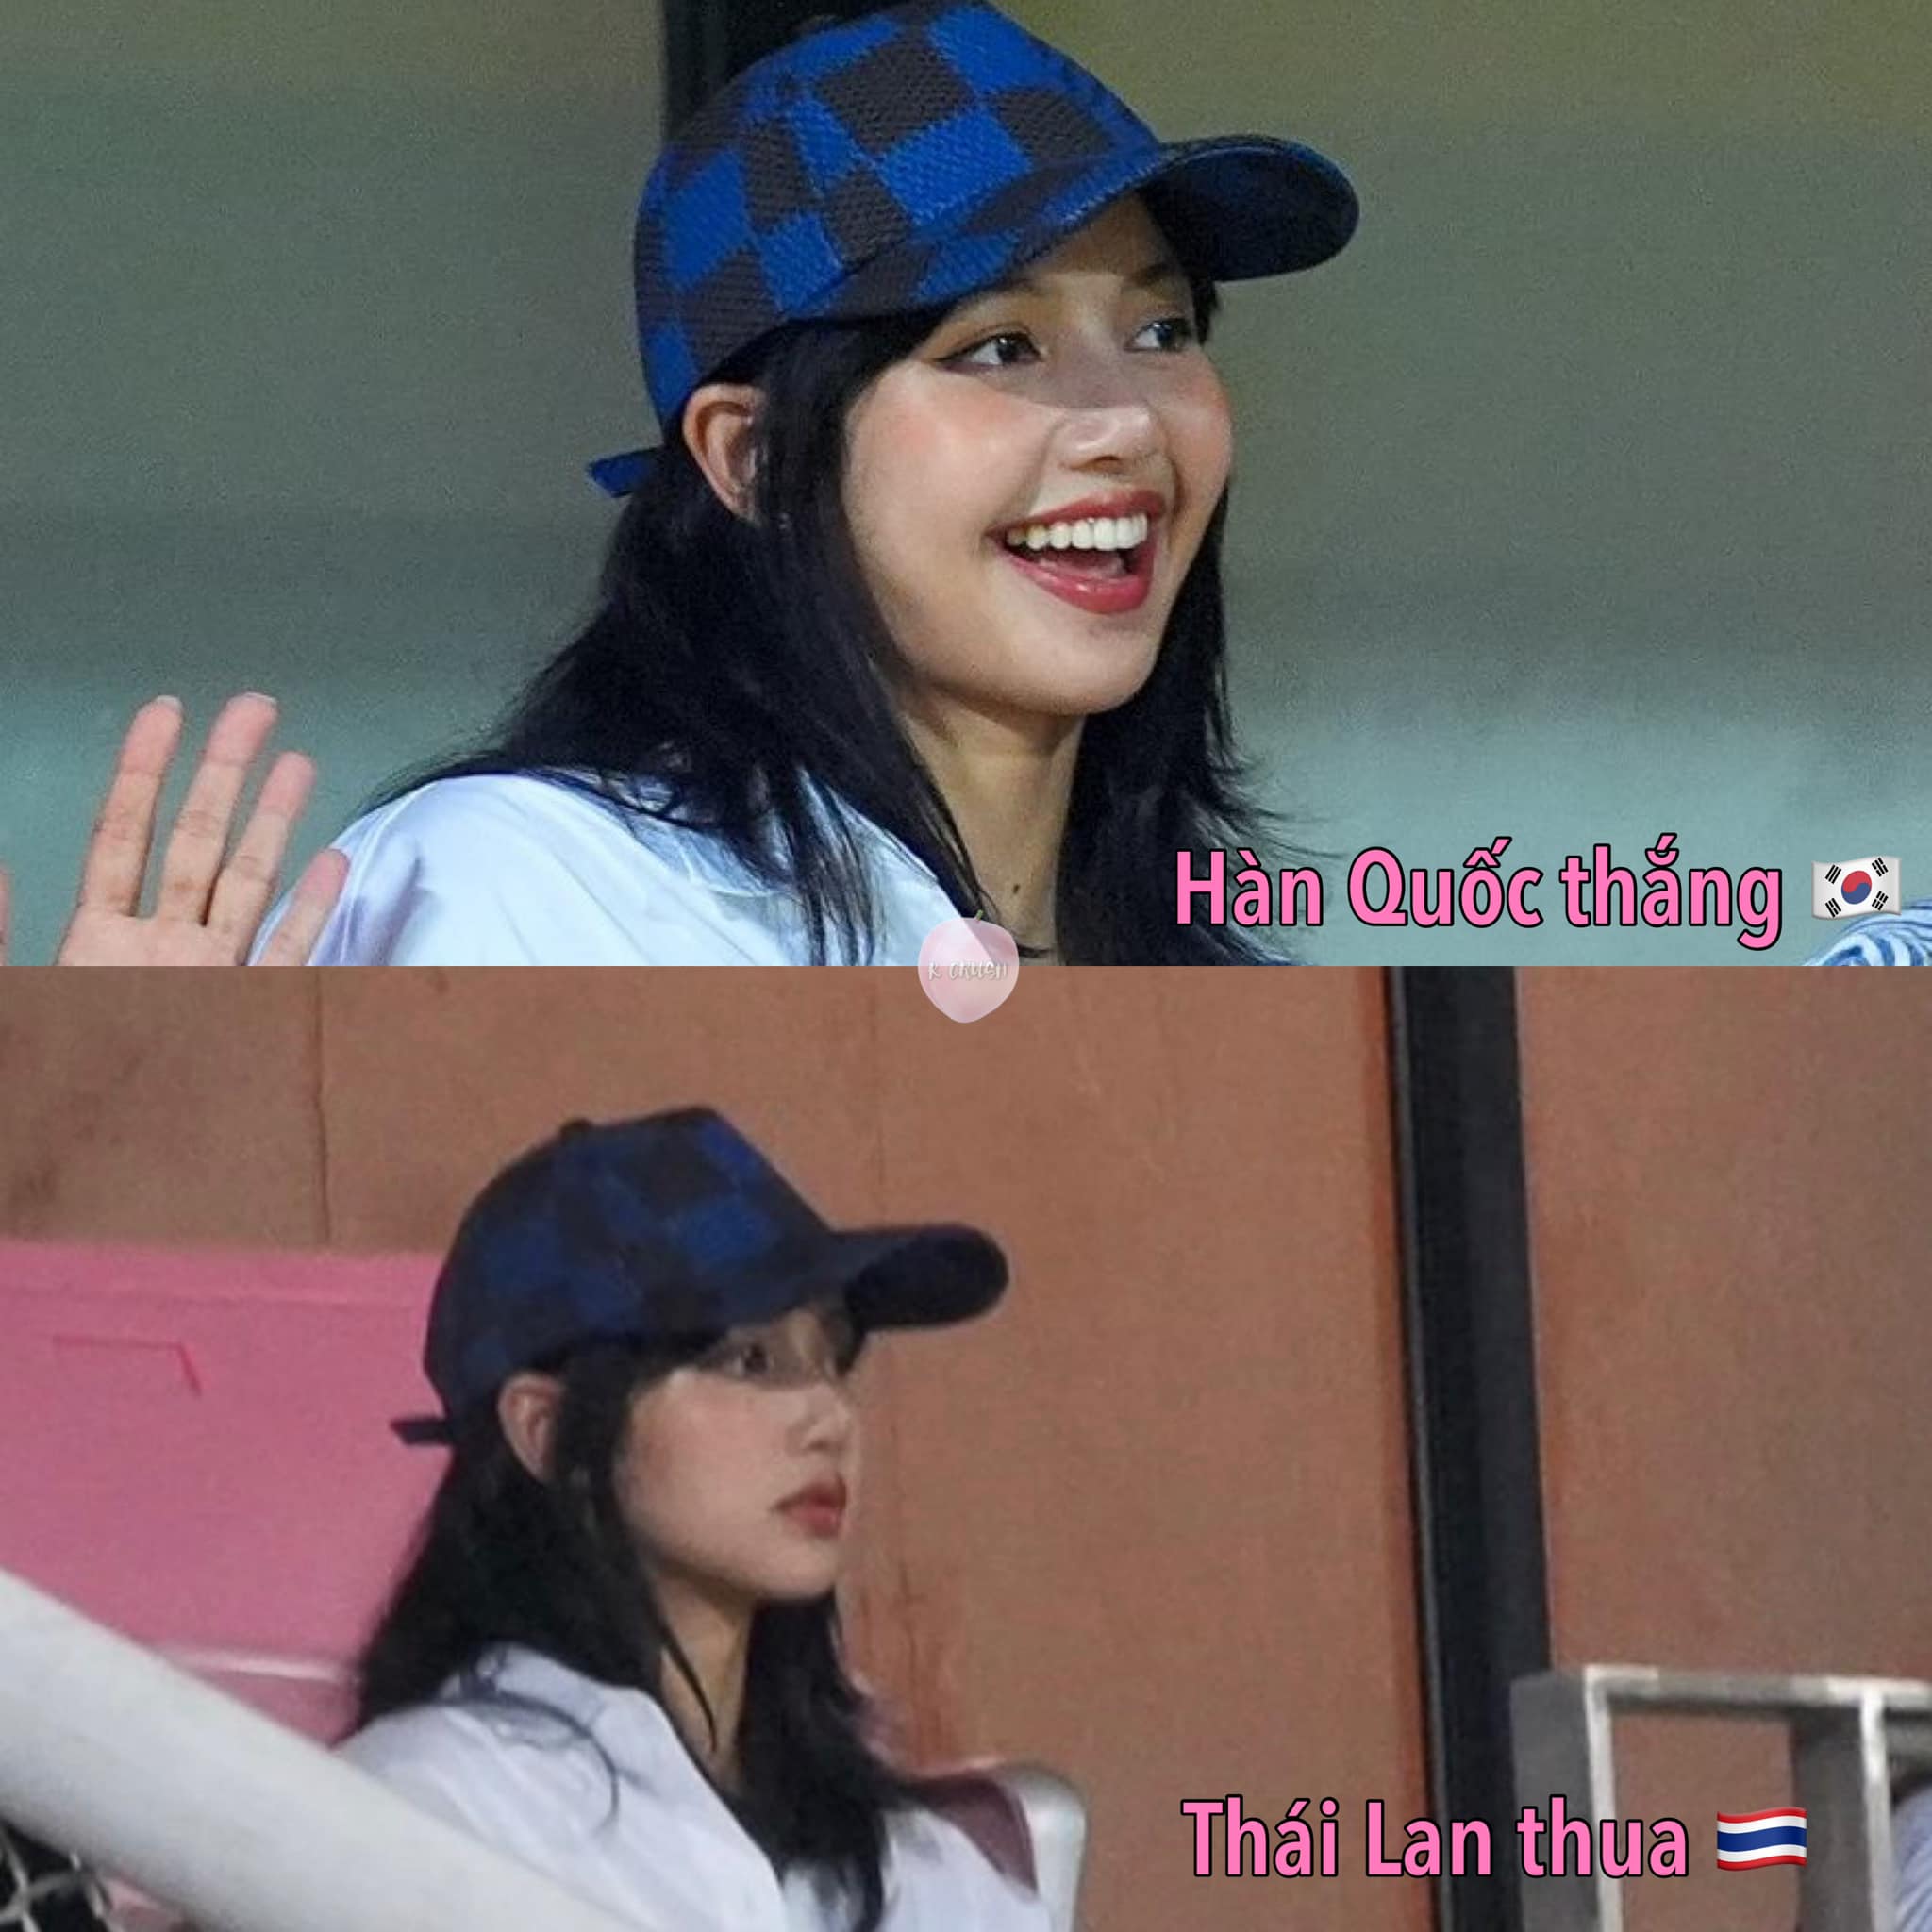 Biểu cảm của Lisa khi Thái Lan thua Hàn Quốc 0-3 hiện đang viral trên mạng xã hội.